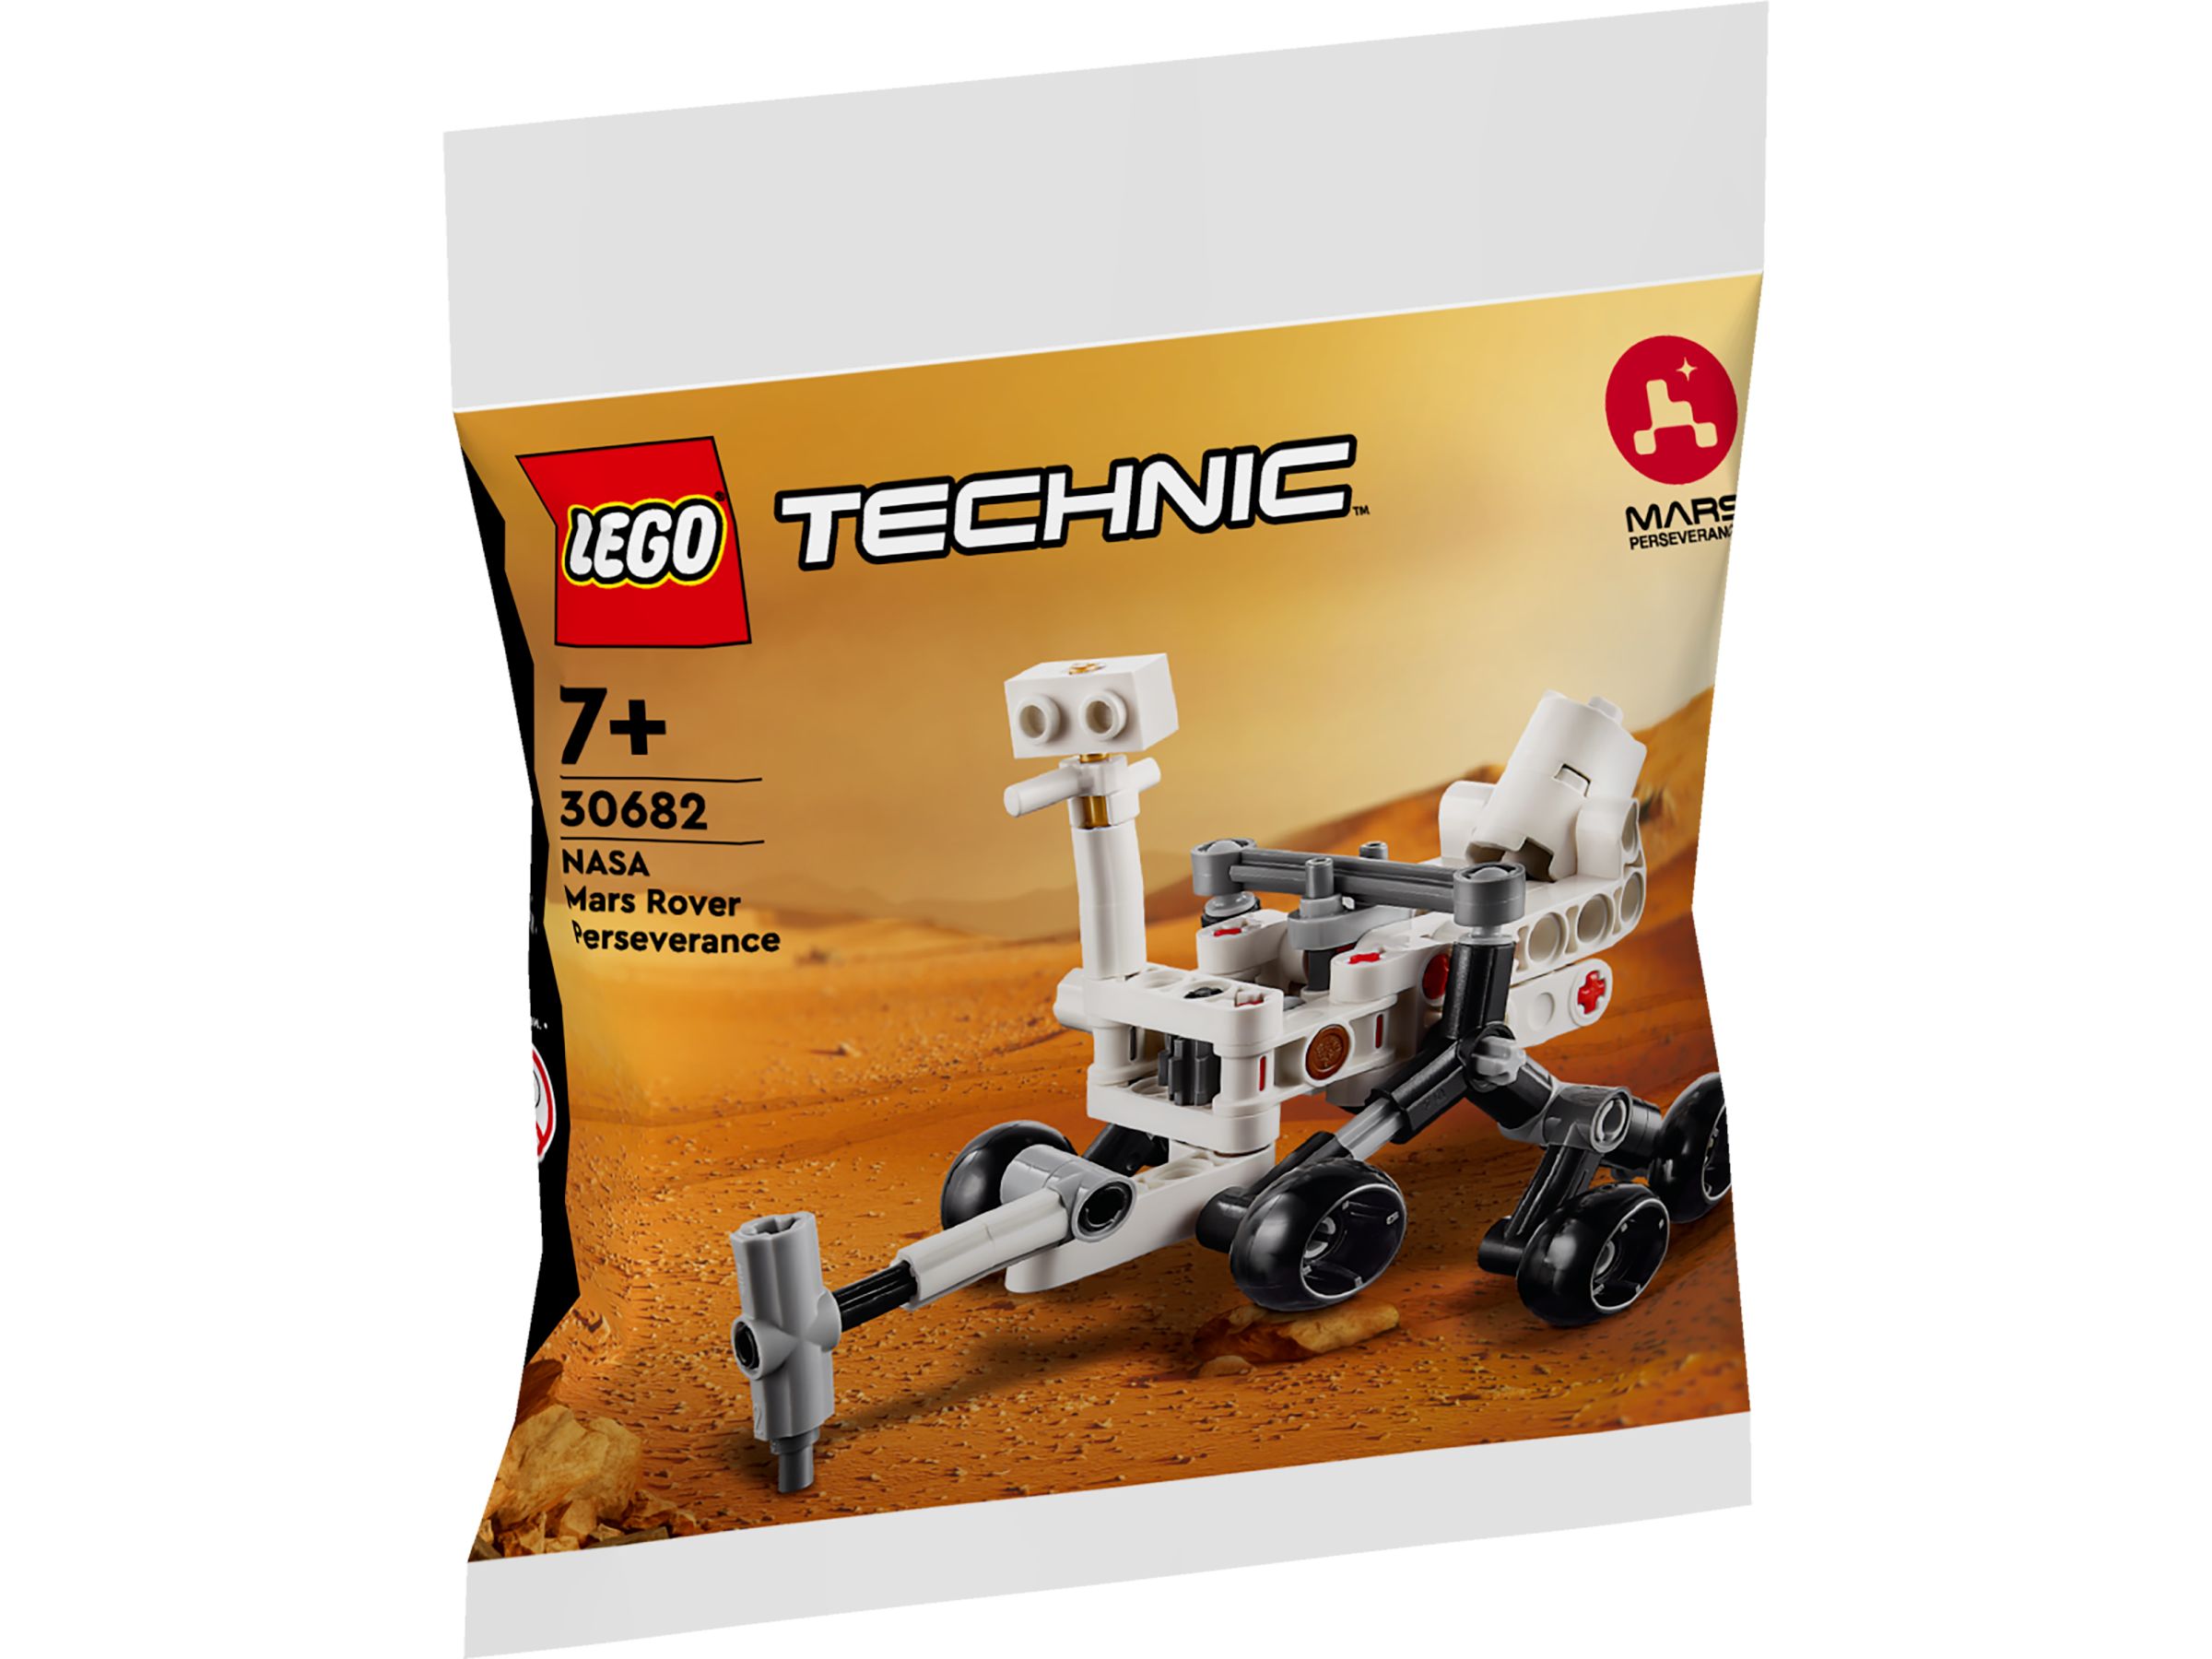 LEGO Technic 30682 NASA Mars Rover Perseverance Polybag